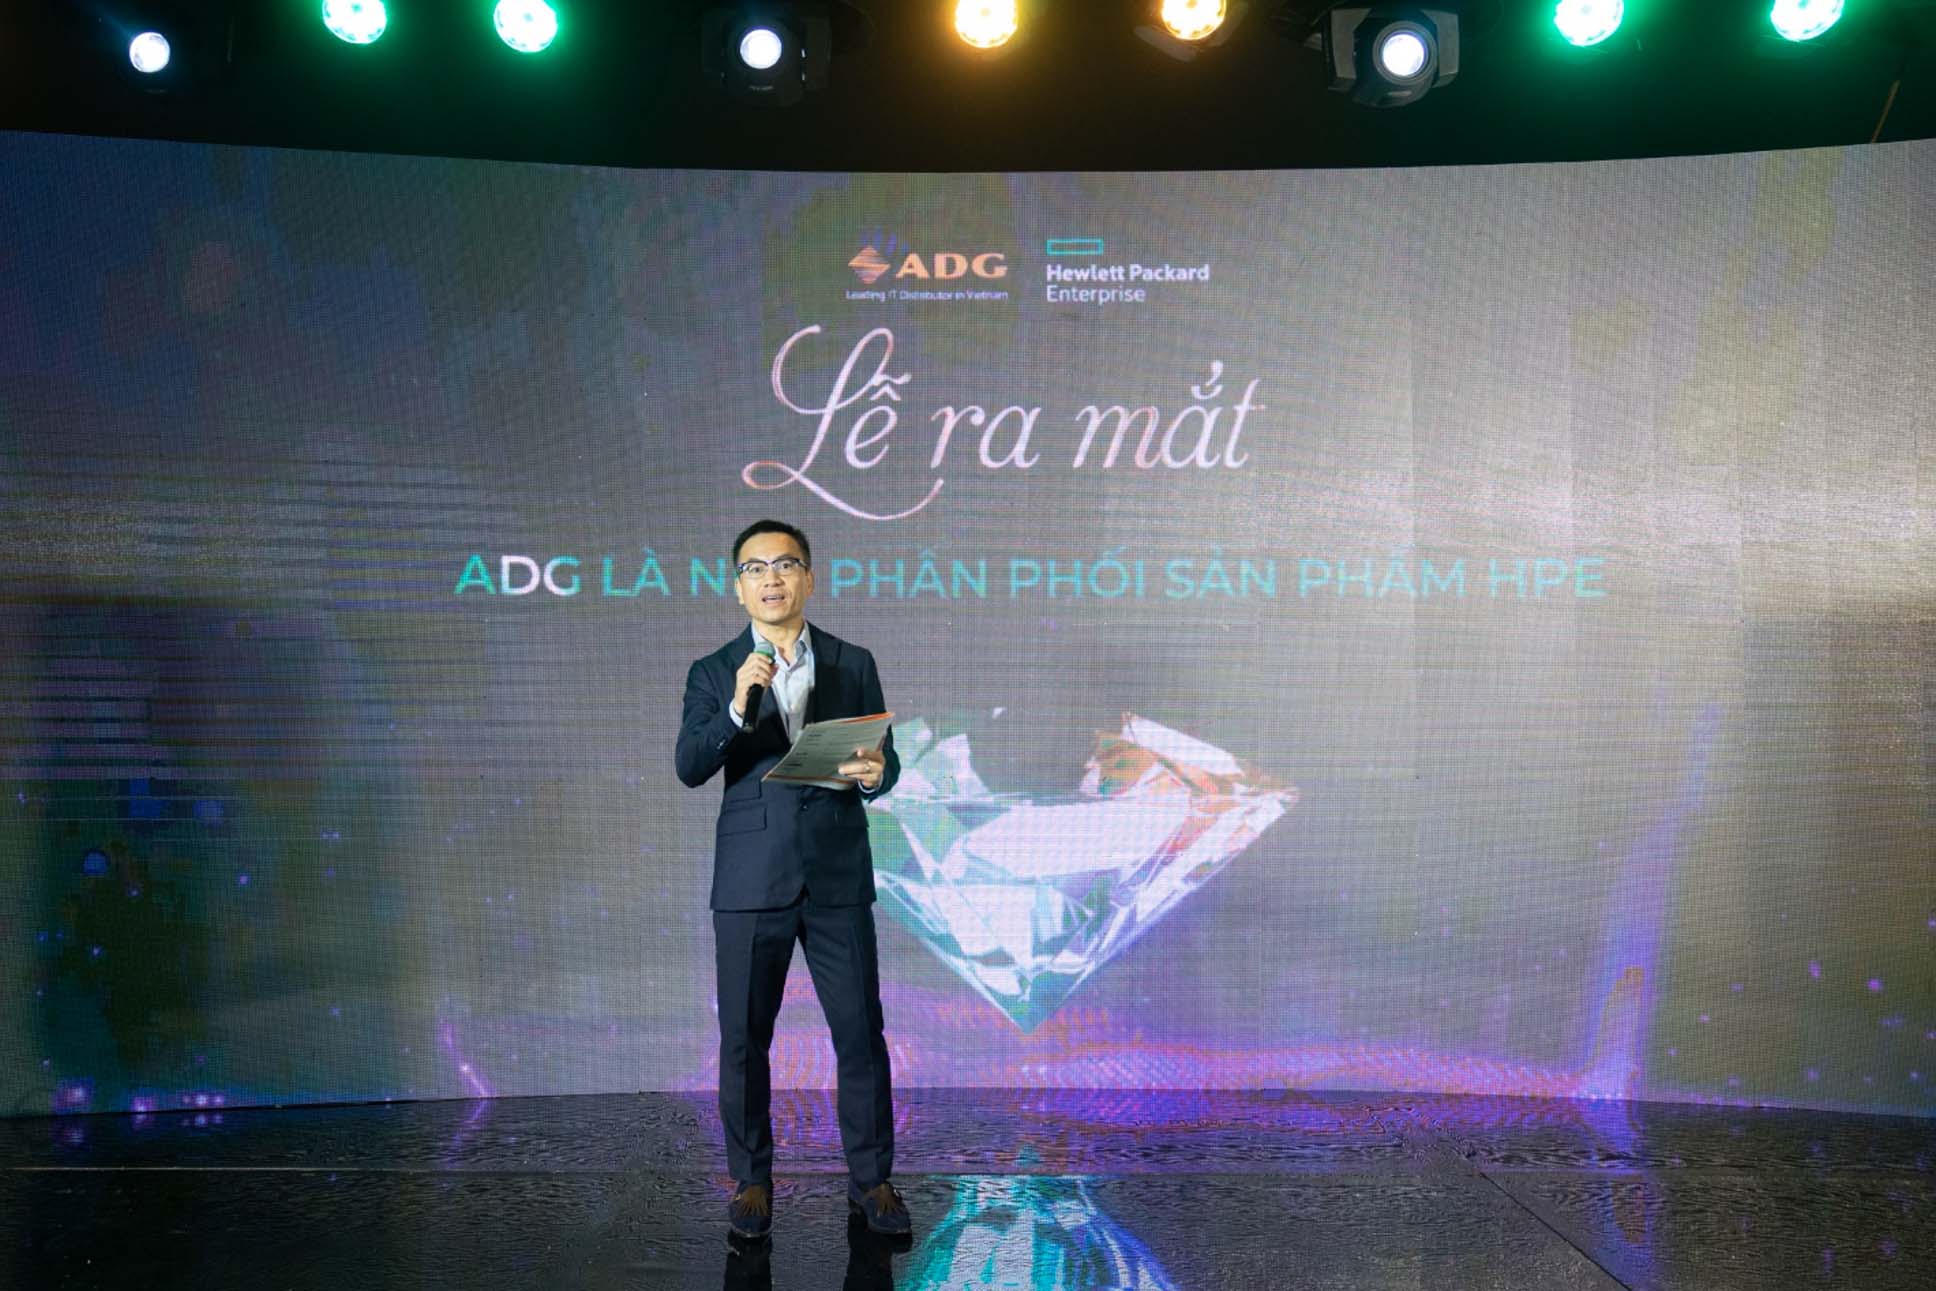 ADG Distribution chính thức trở thành nhà phân phối mới nhất của HPE tại Việt Nam